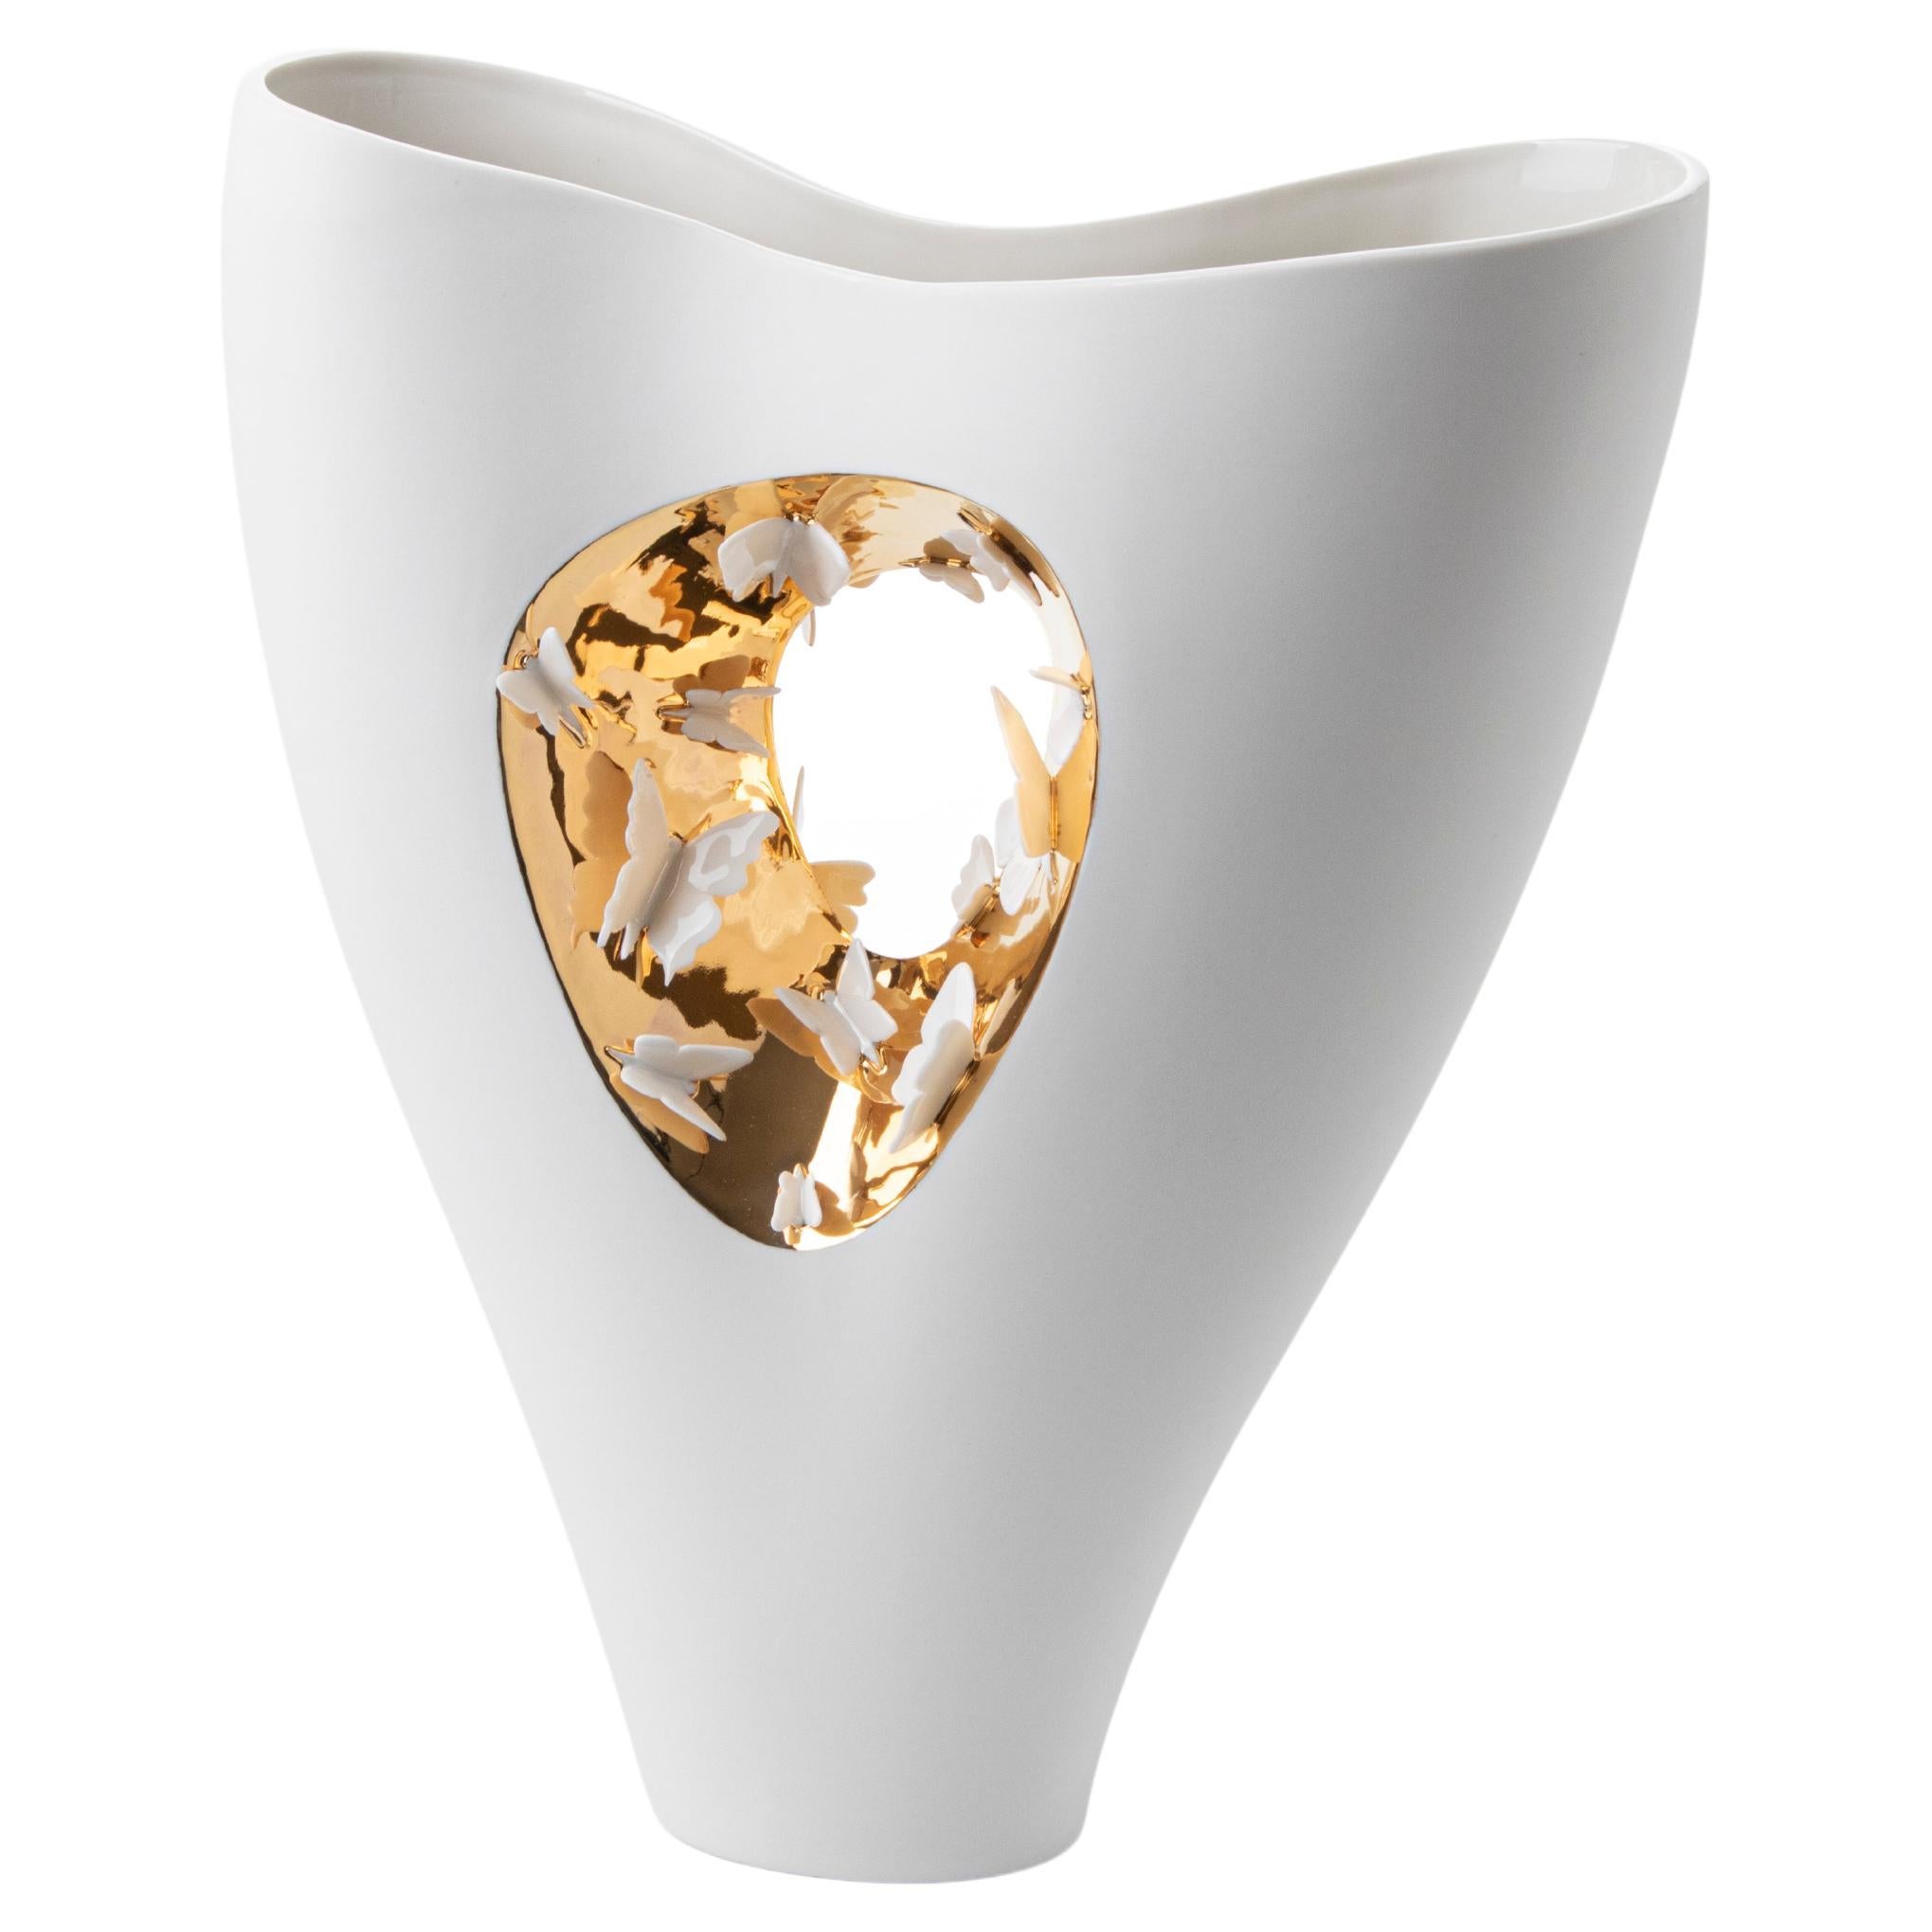 Contemporary Porcelain Vase Gold Butterflies Handmade Sculpture Fos Ltd Edition